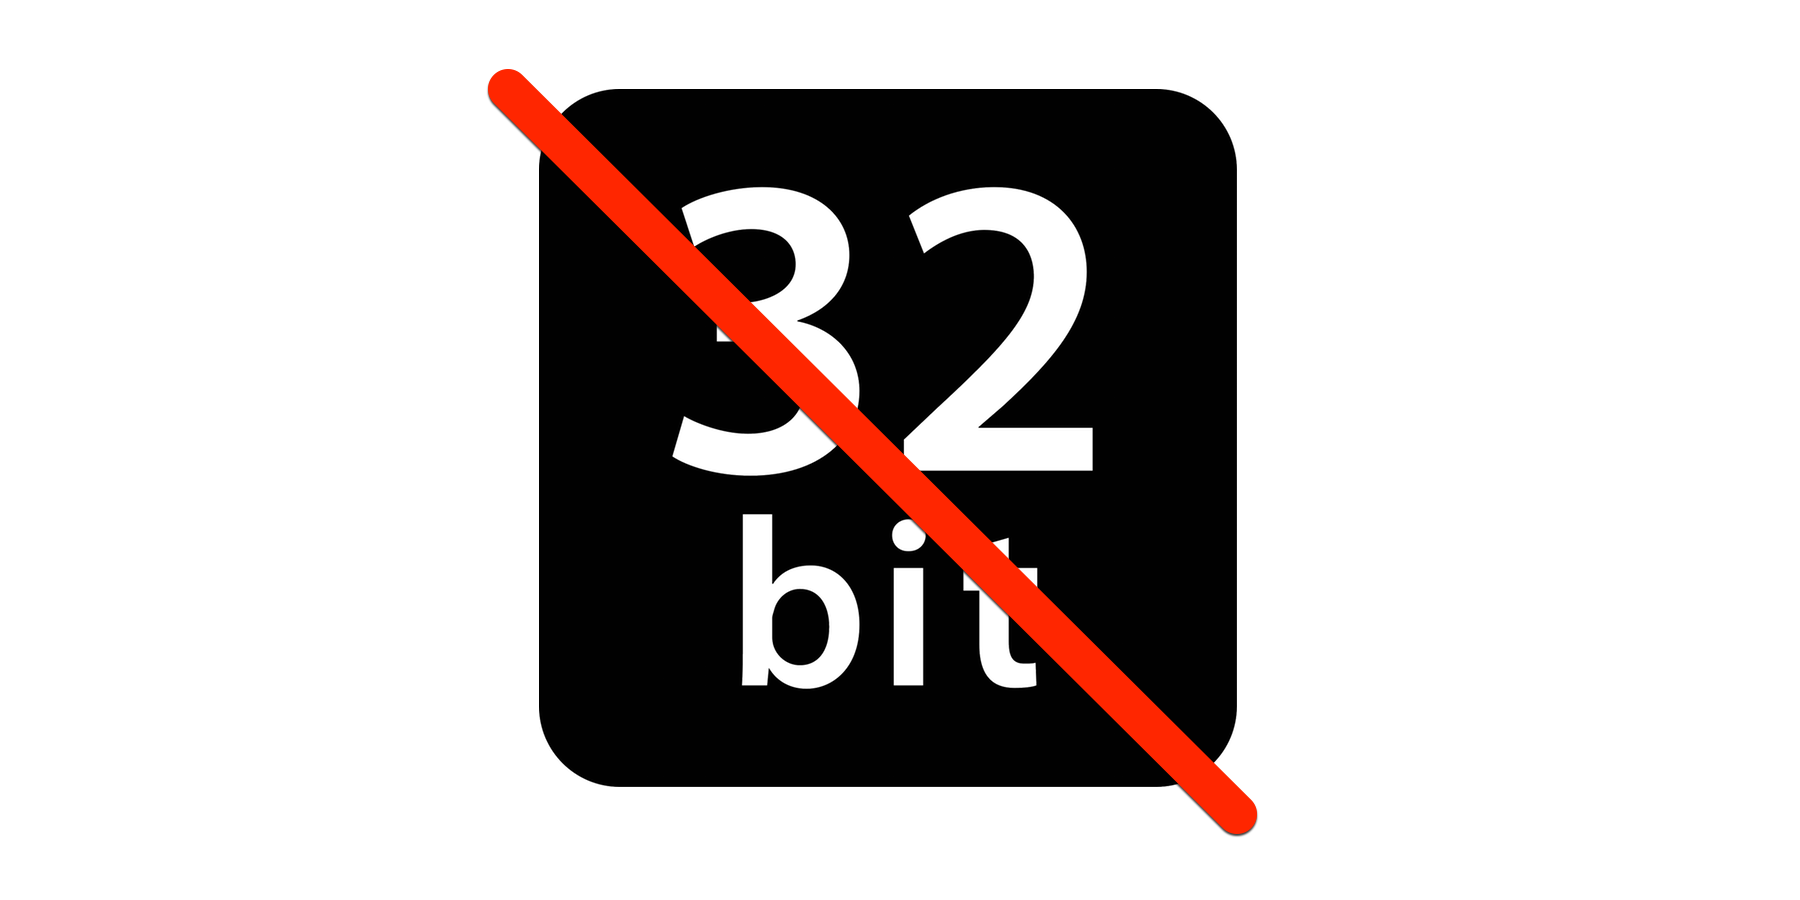 Koniec 32-bitów, jak rozpoznać aplikacje, z którymi trzeba będzie się pożegnać